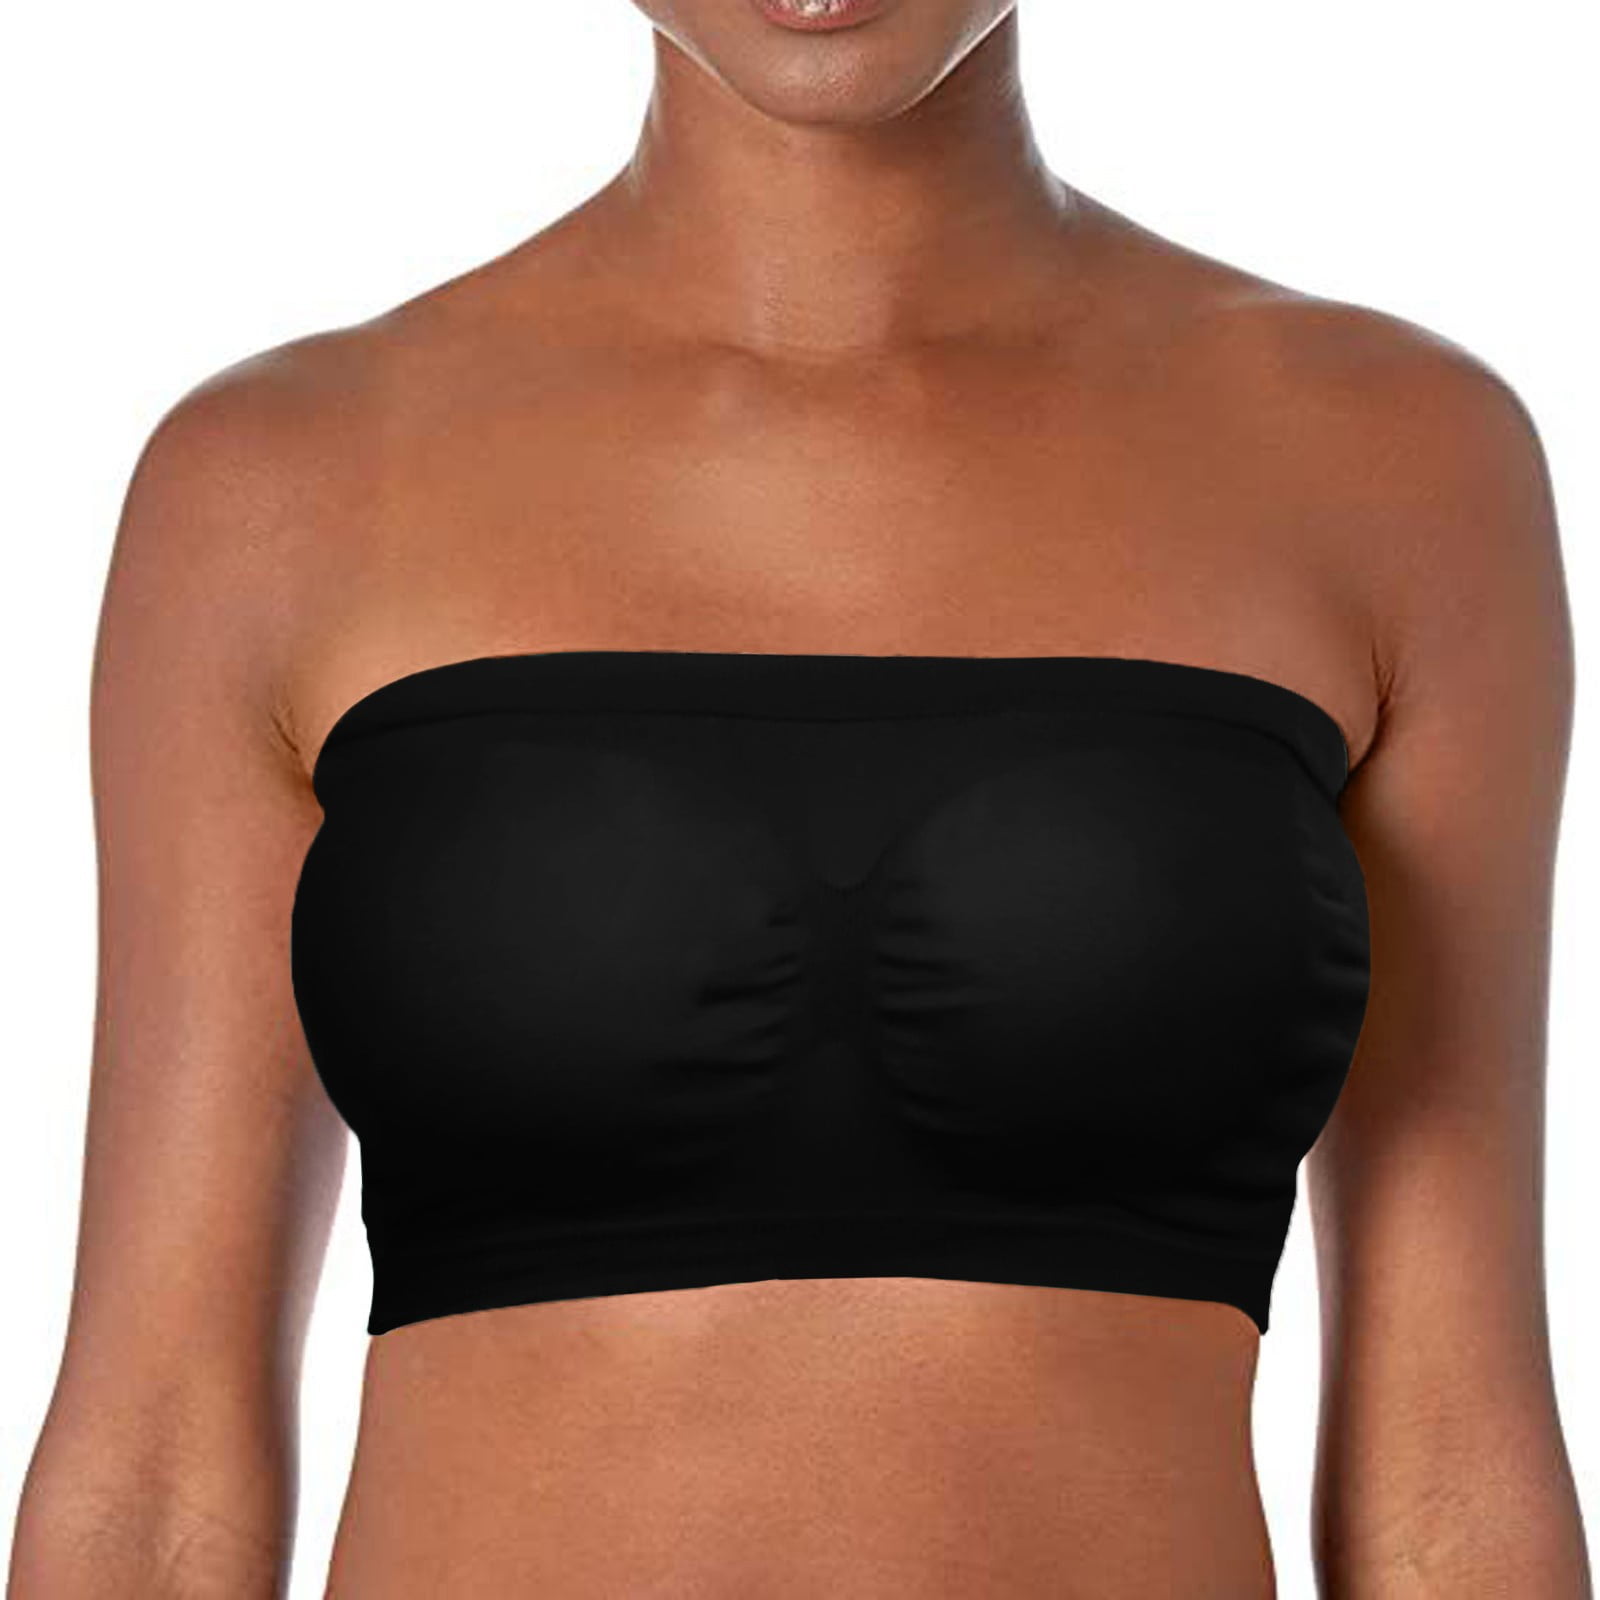 Qcmgmg Strapless Bras for Women Push Up Bandeaus Comfort Seamless T-Shirt  Bra Hot Pink XL 